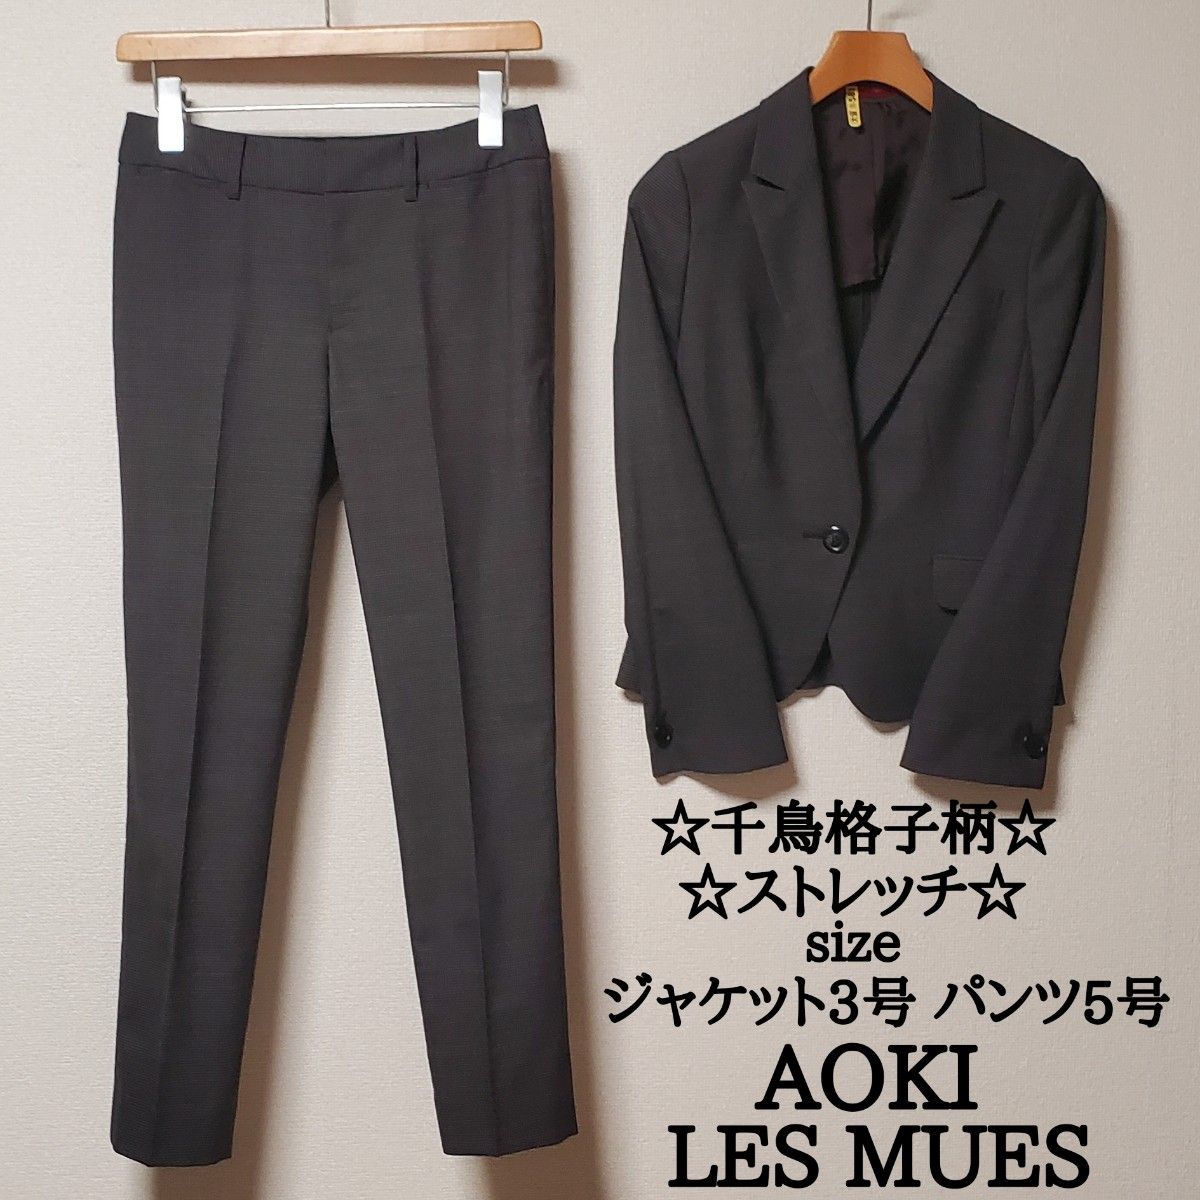 AOKI LES MUES アオキ レミュー レディース ビジネス パンツ スーツ